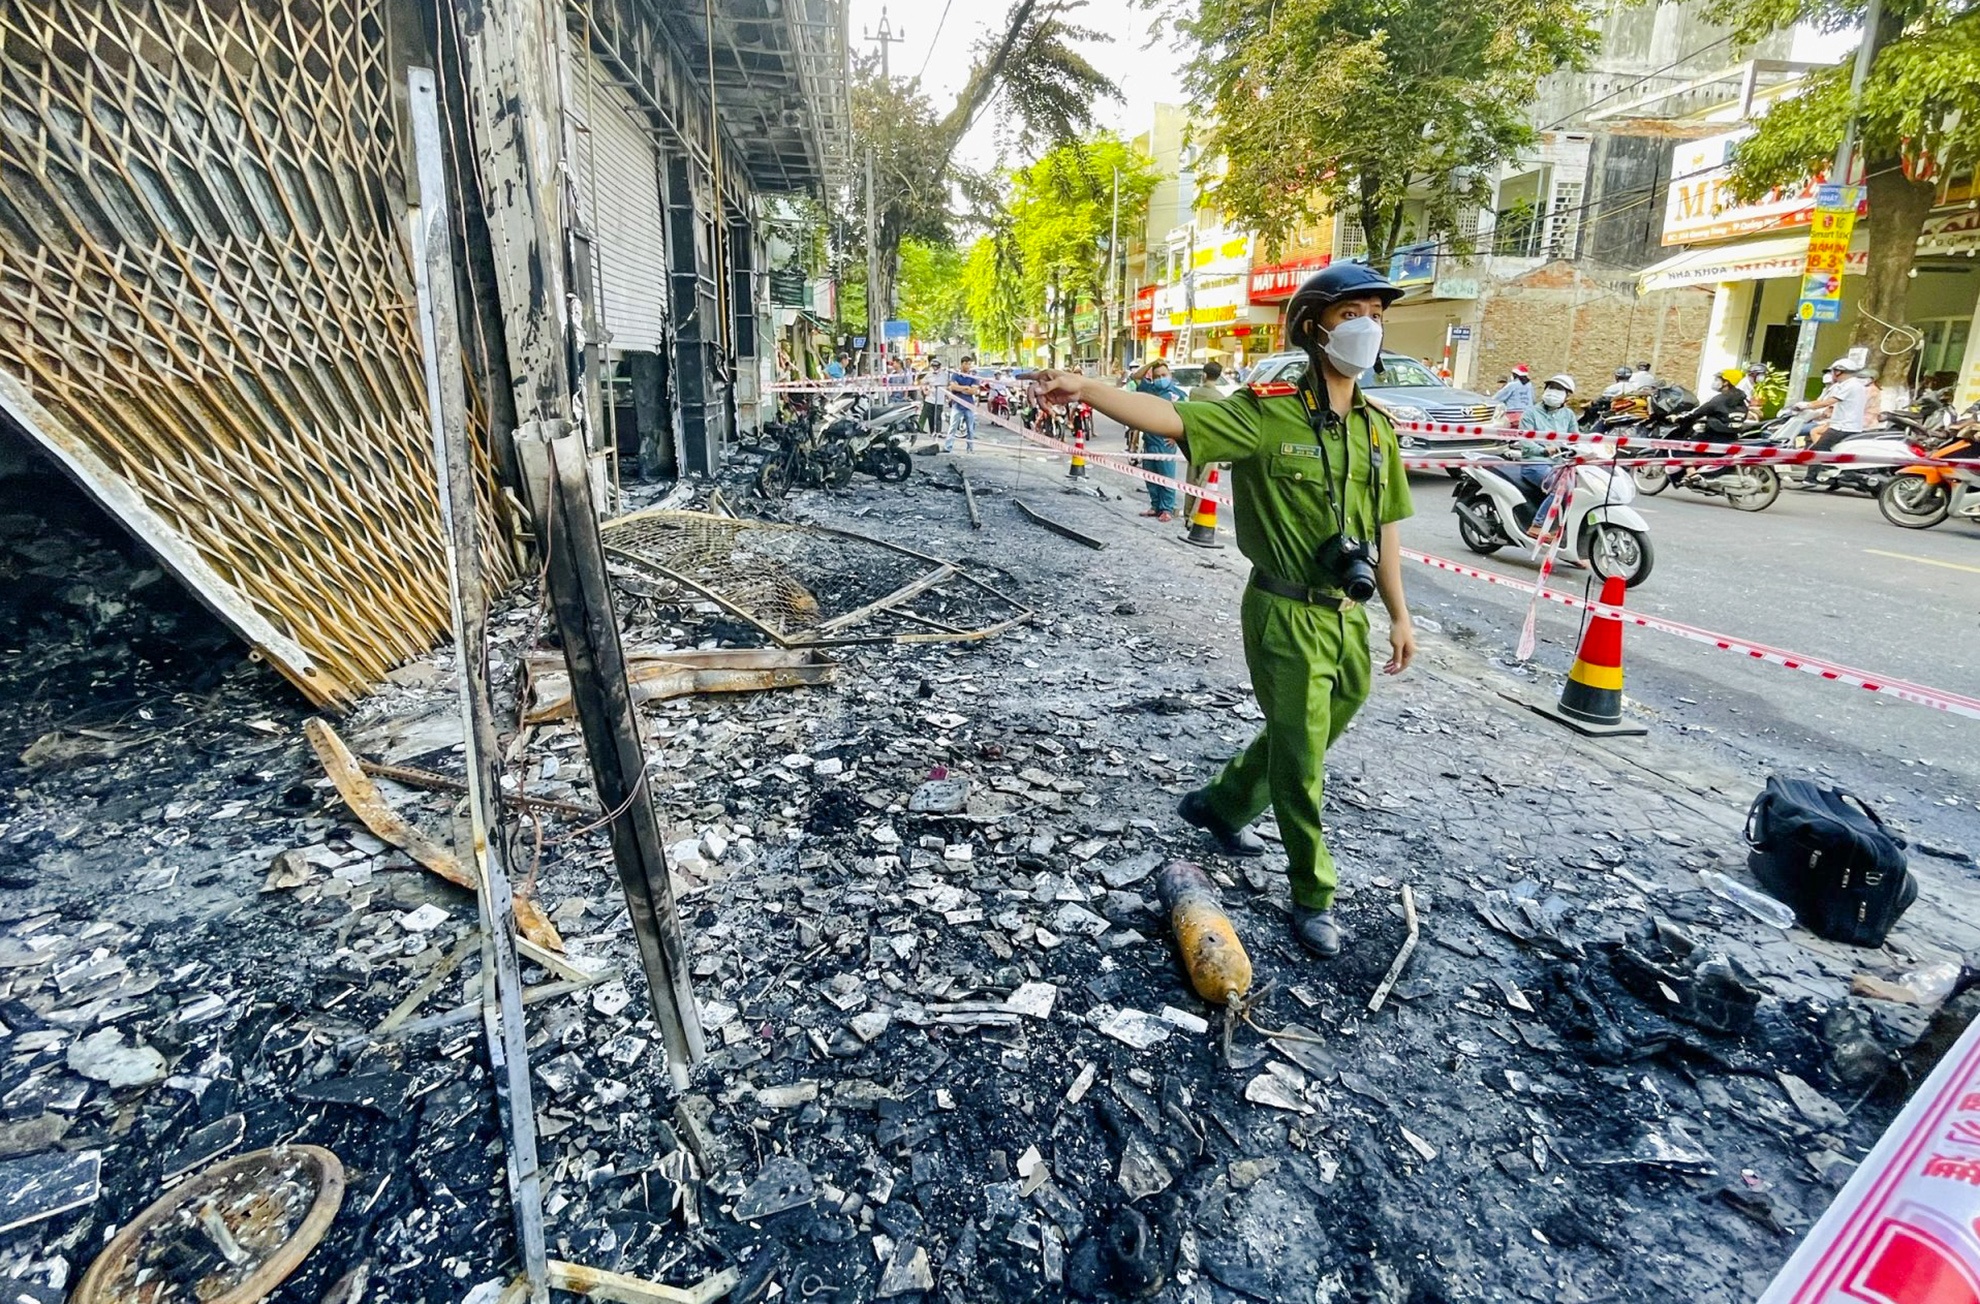 Phong tỏa 3 ngôi nhà bị cháy rụi ở Quảng Ngãi để điều tra vụ hỏa hoạn - Ảnh 6.